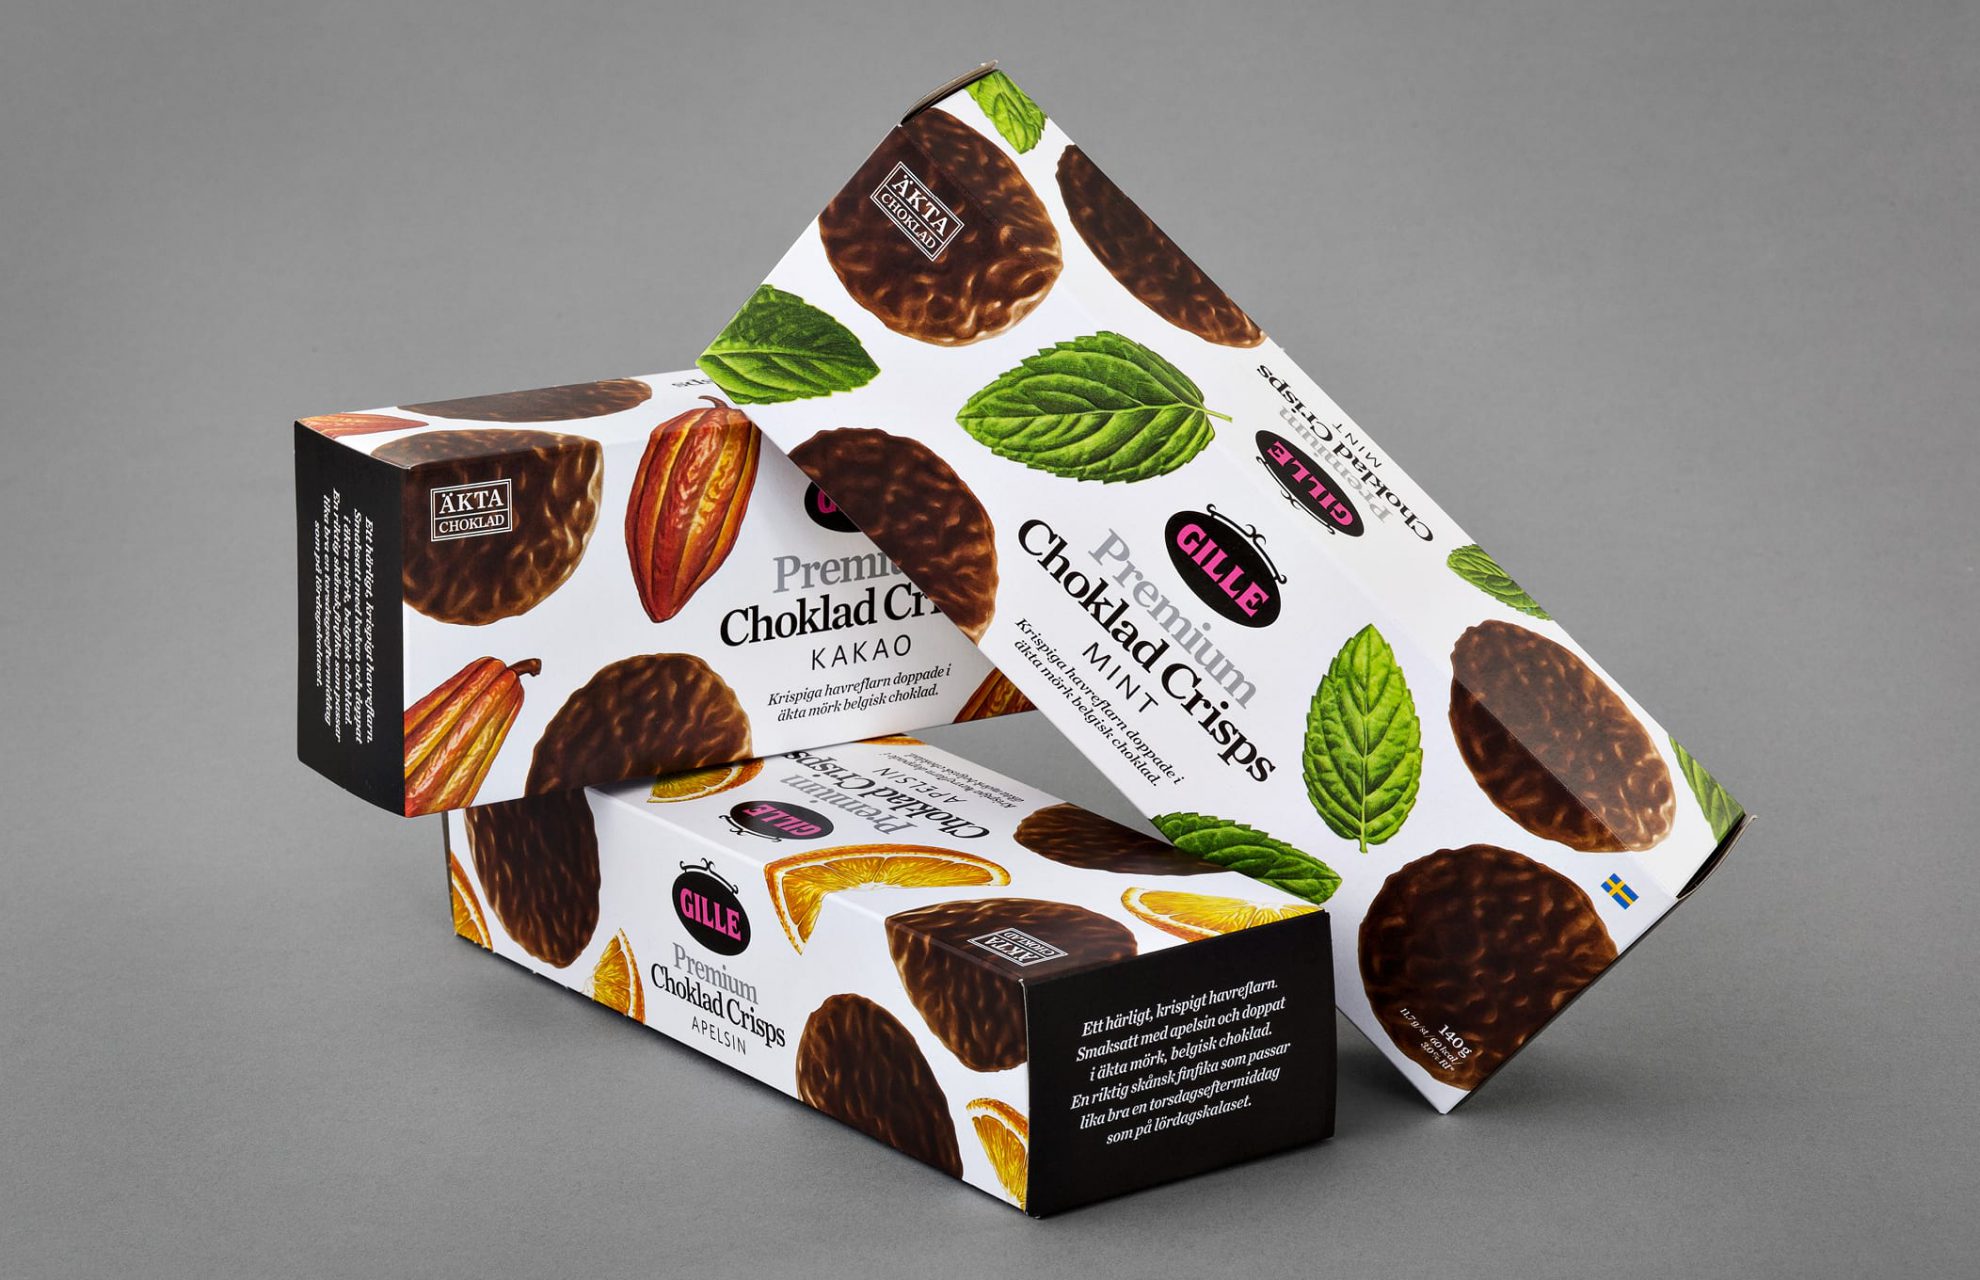 Tre förpackningar på hög med premium choklad crisps kakor från Gille